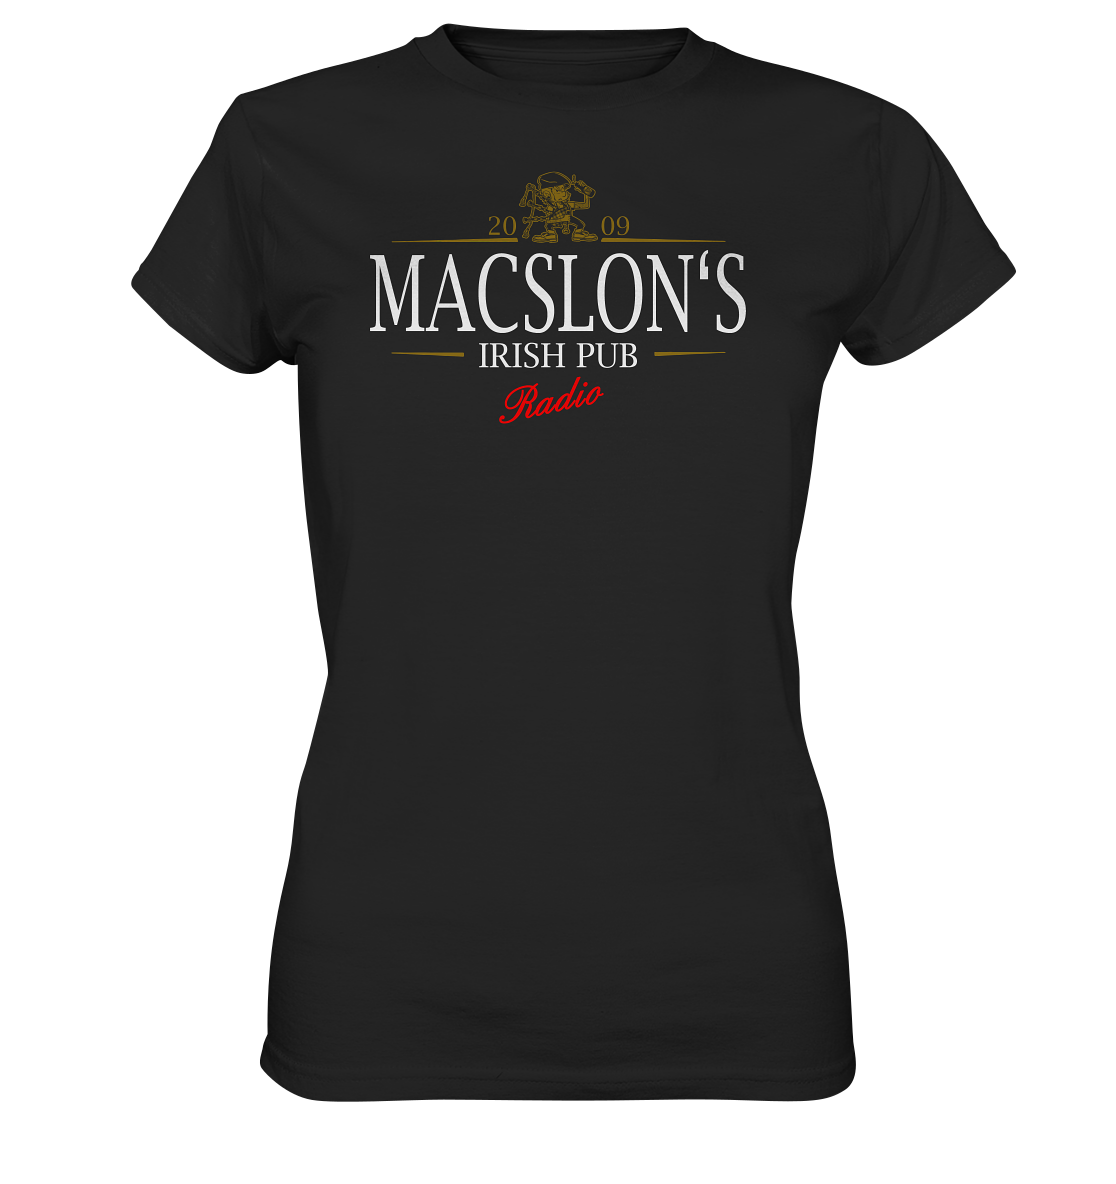 MacSlon's Irish Pub Radio "Stout" - Ladies Premium Shirt